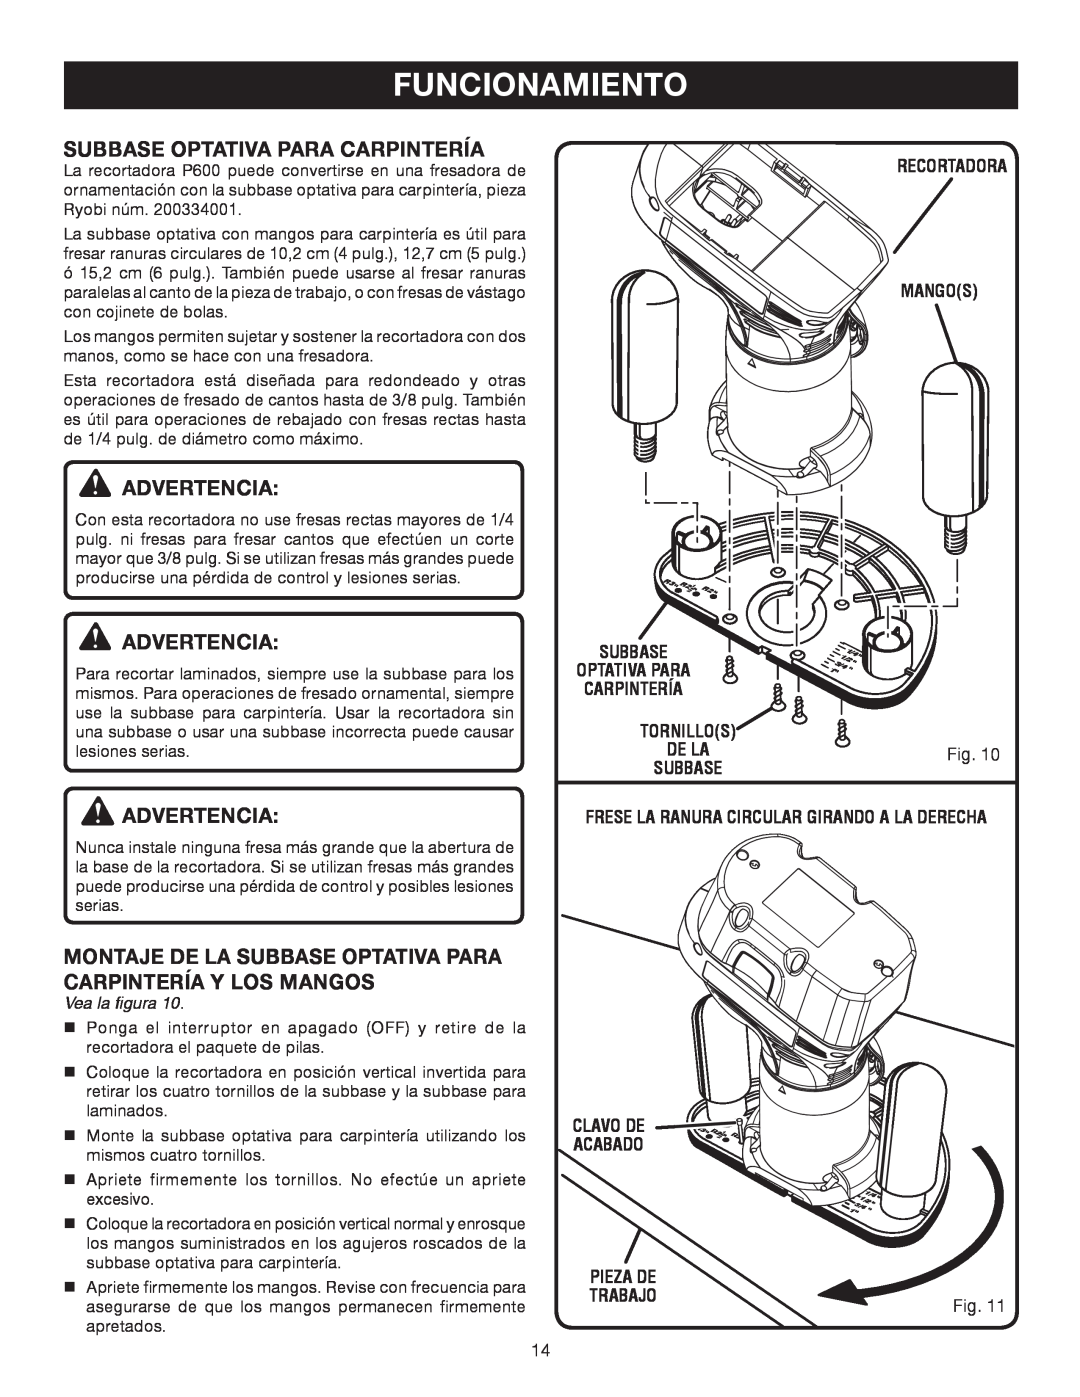 Ryobi P600 manual Subbase Optativa Para Carpintería, Funcionamiento, Advertencia, Vea la figura 